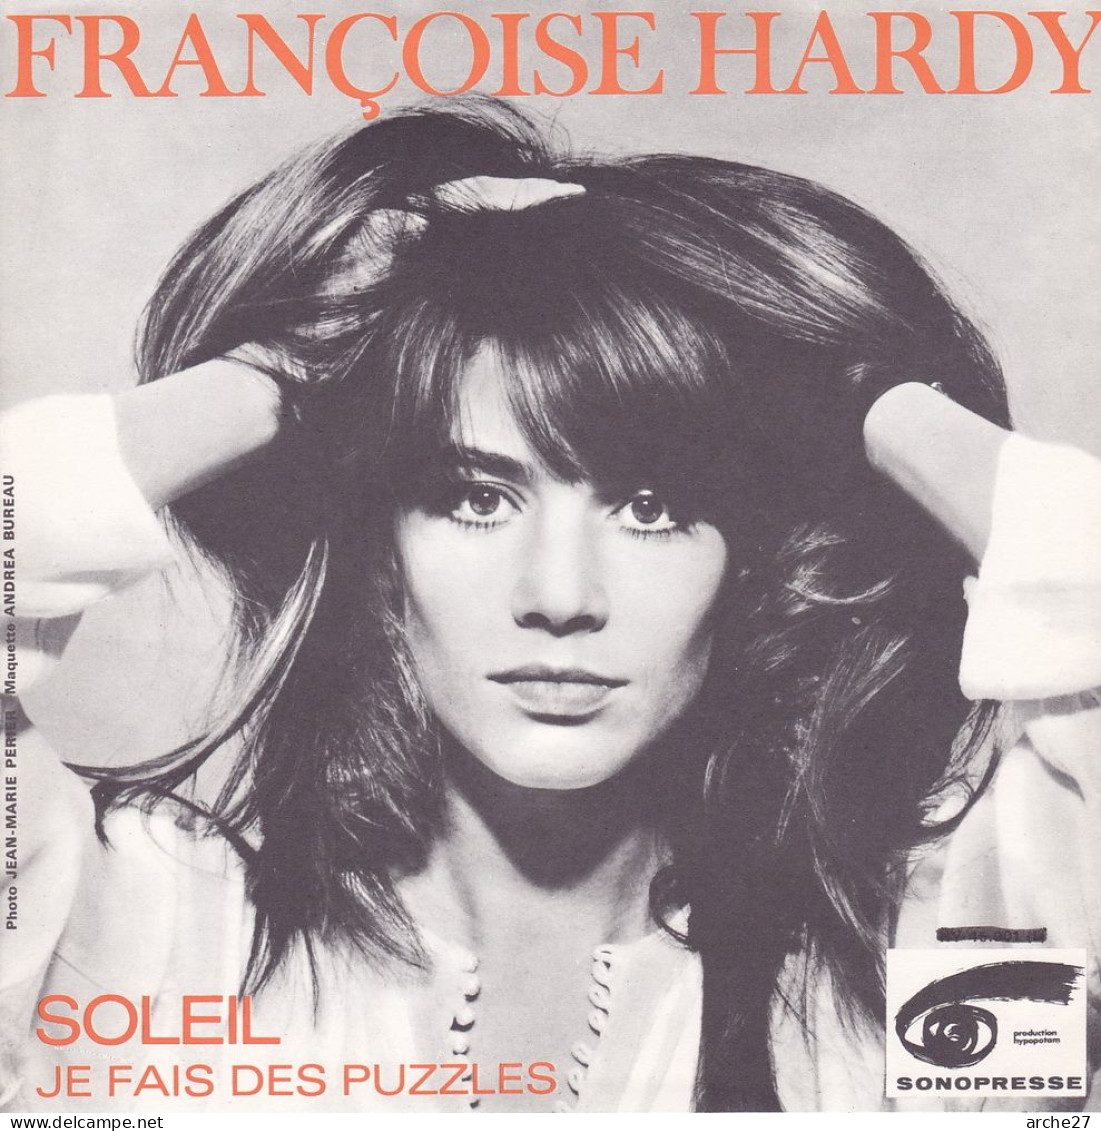 POCHETTE (encart) SP 45 TOURS Françoise HARDY - HY 45901 L (sans Disque) - Accessories & Sleeves